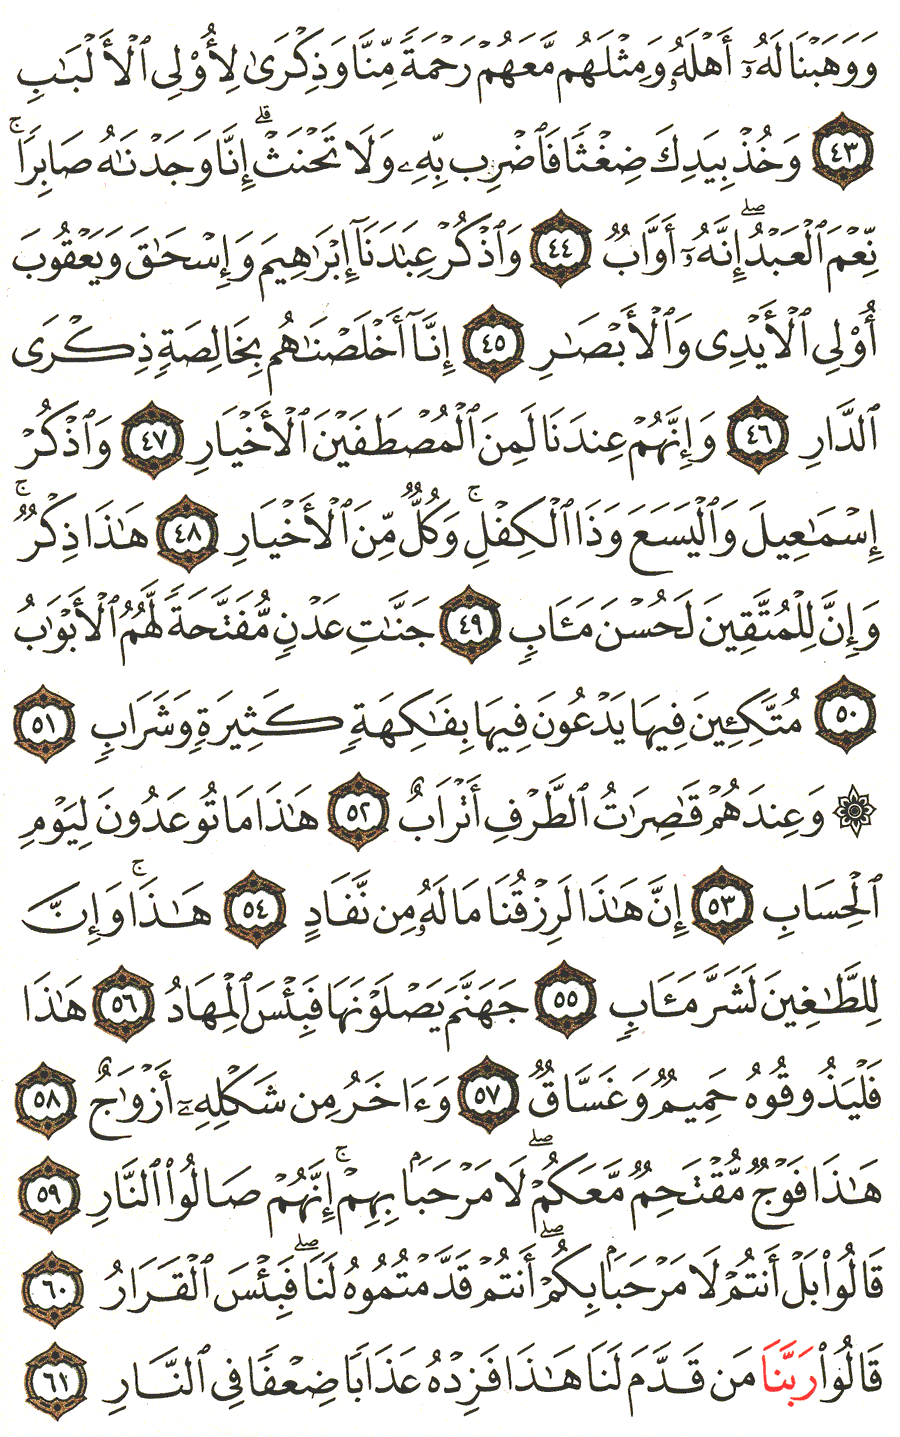 الصفحة 456 من القرآن الكريم